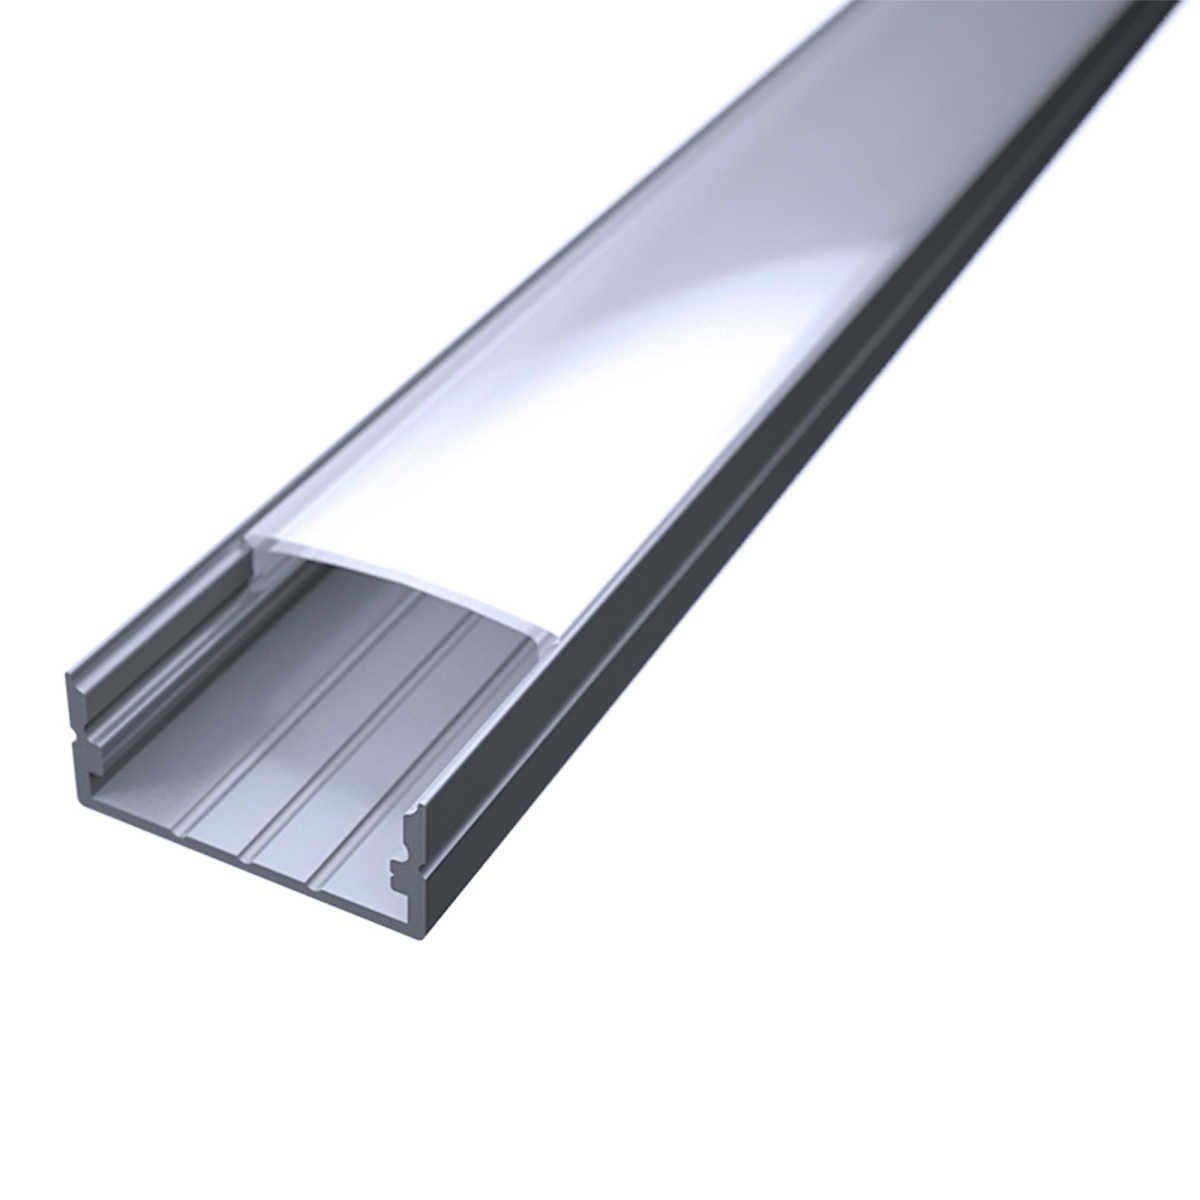 LED Flachprofil "Slim-Line max" | Abdeckung diffus | Zuschnitt auf 96cm |